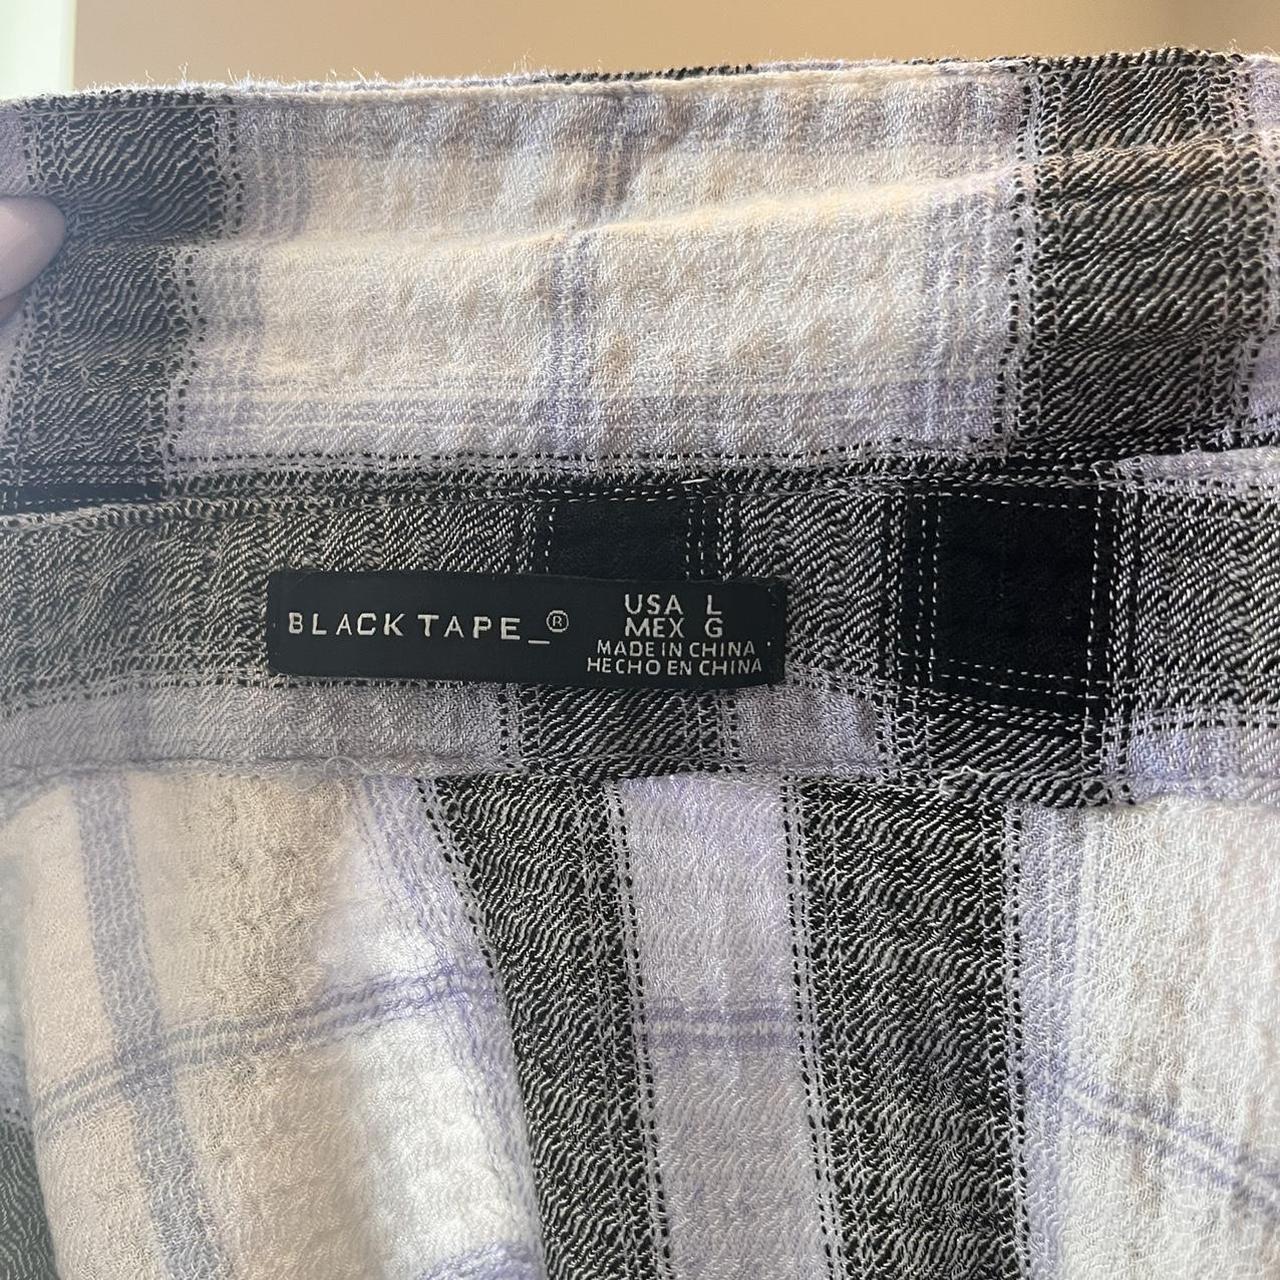 Product Image 3 - Black tape white/purple/black plaid short